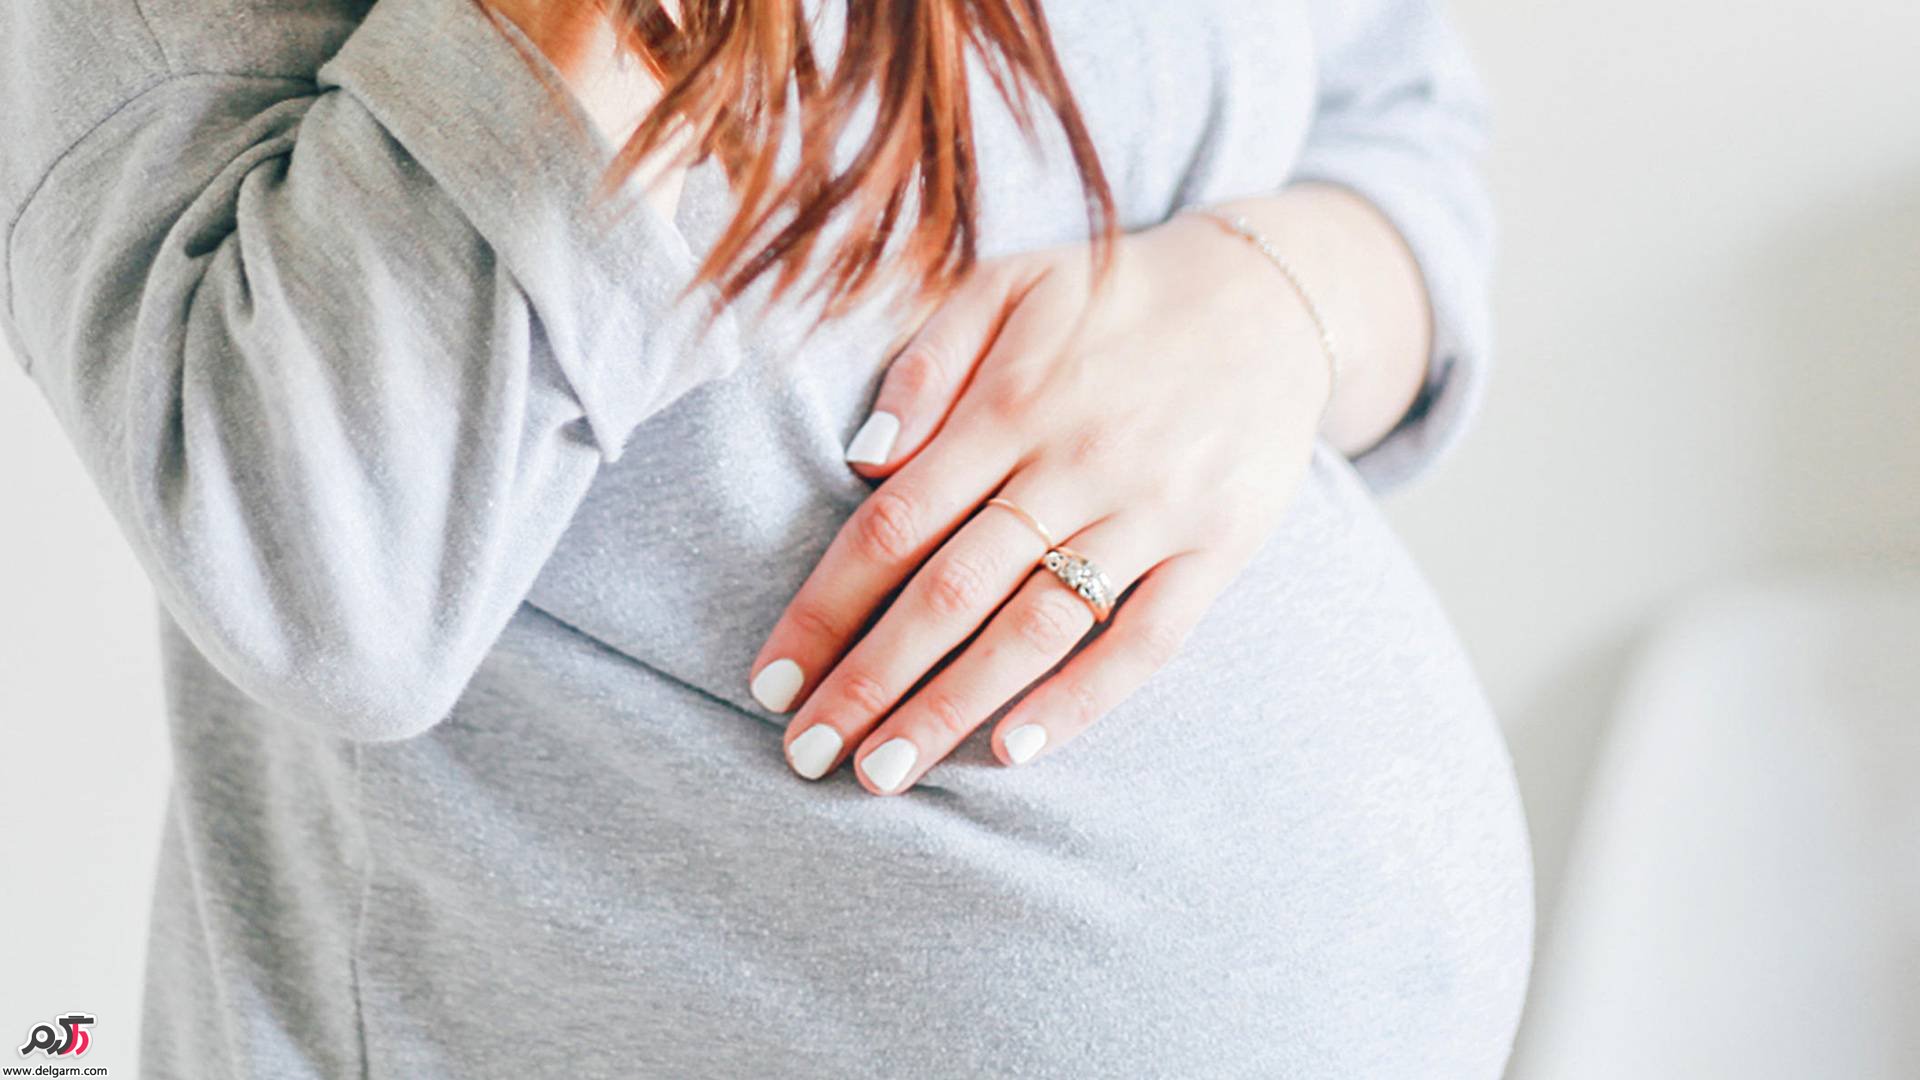 احتمال بارداری با پیشاب چقدر است؟